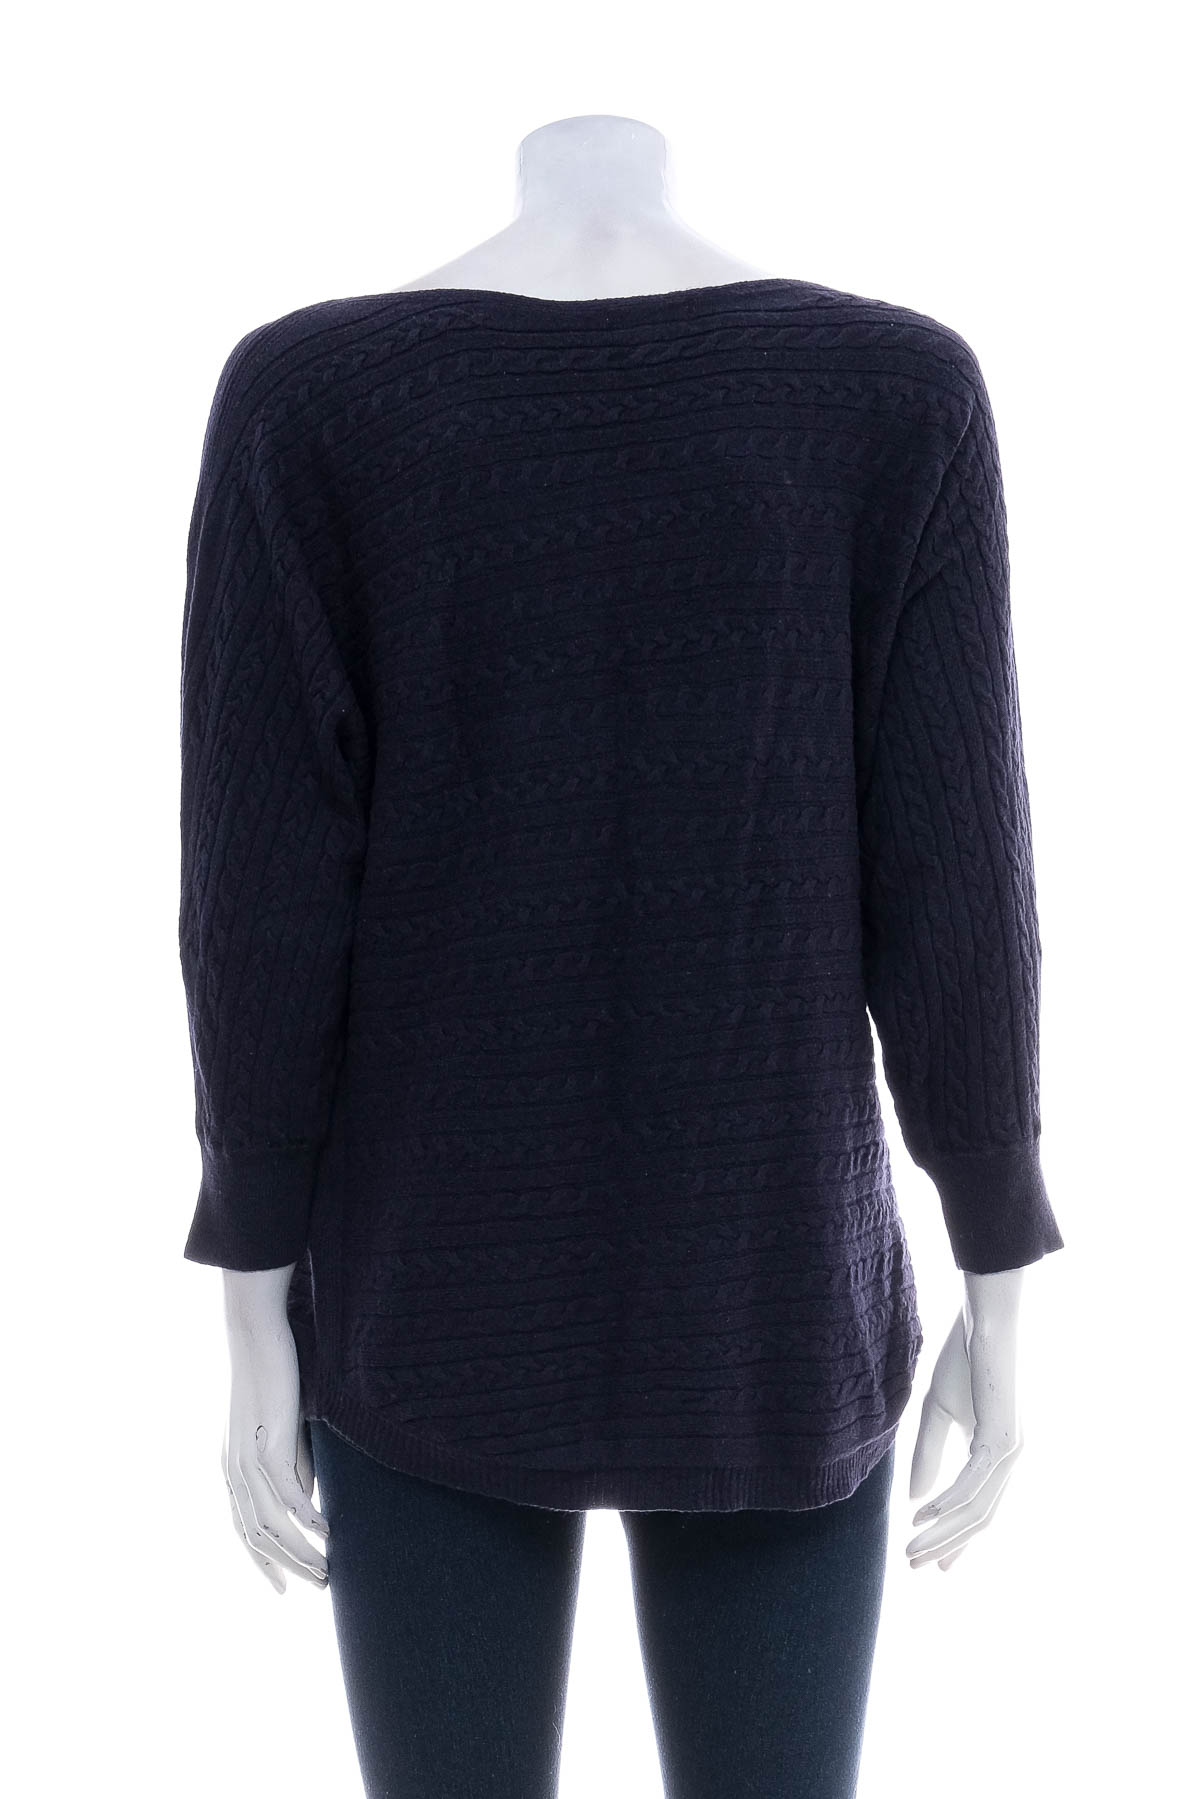 Women's sweater - Market & Spruce - 1